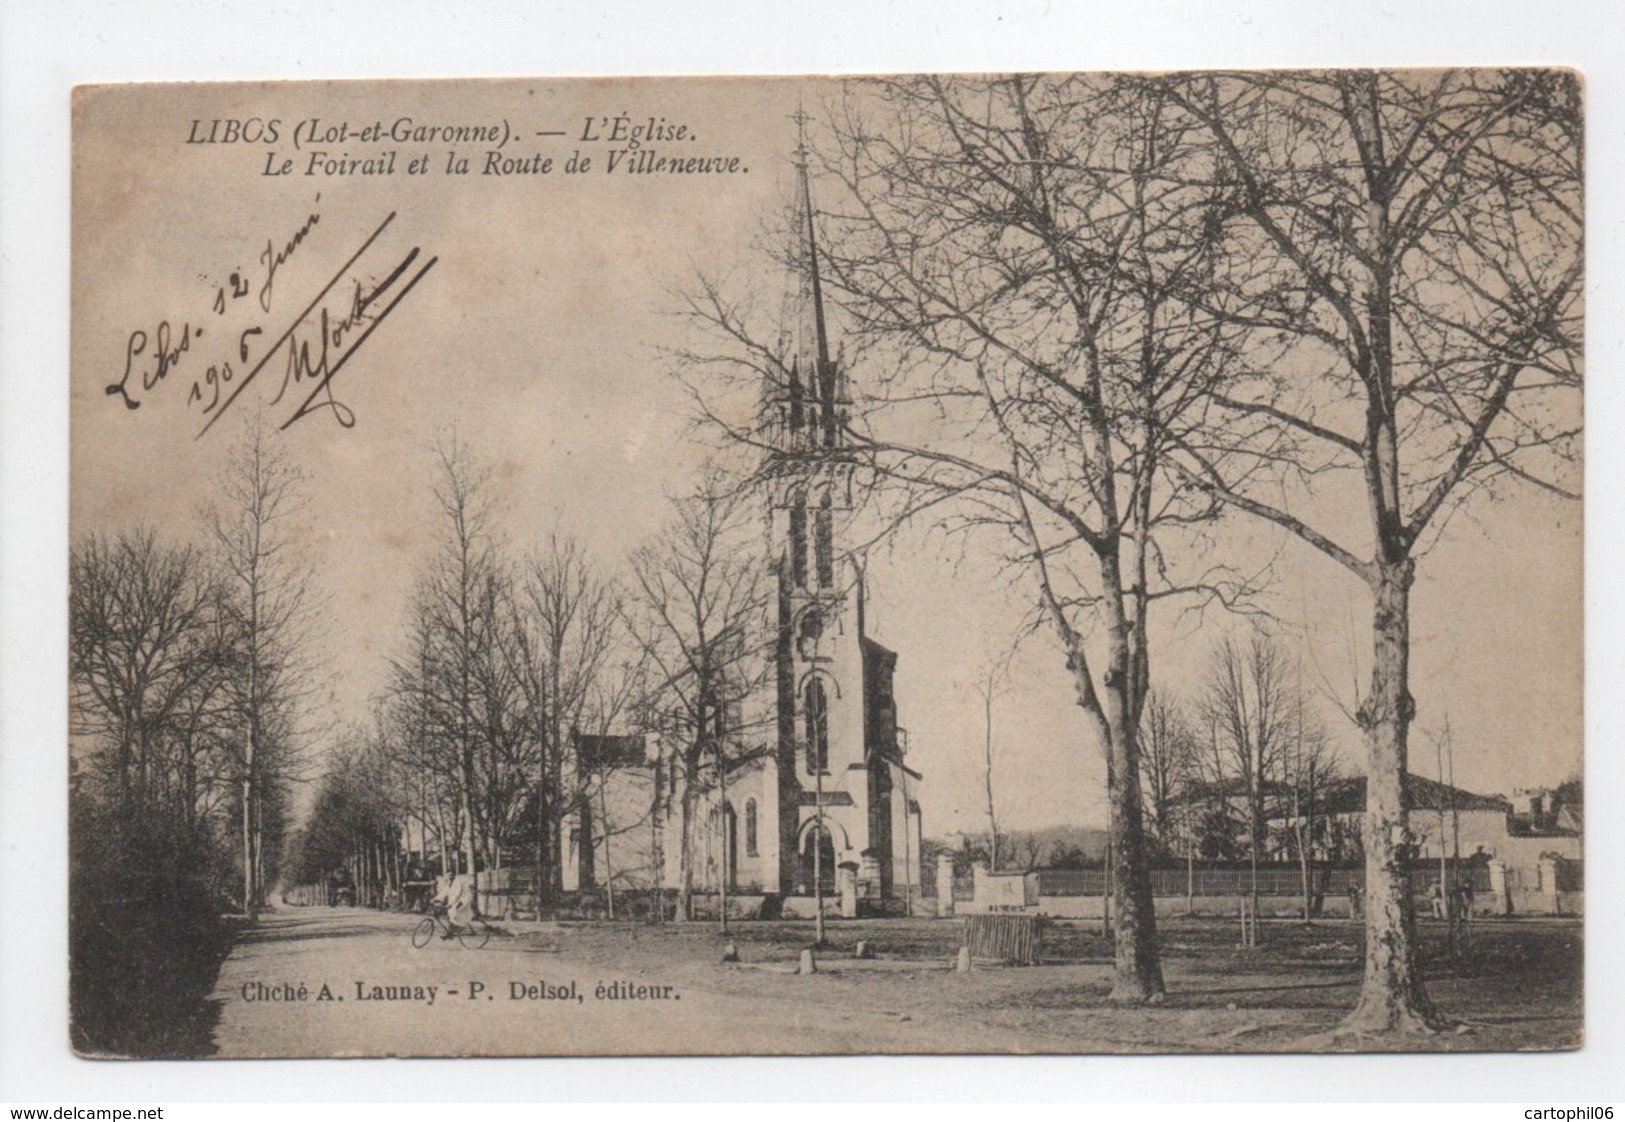 - CPA LIBOS (47) - L'Eglise - Le Foirail Et La Route De Villeneuve 1906 - Cliché A. Launay - Edition P. Delsol - - Libos